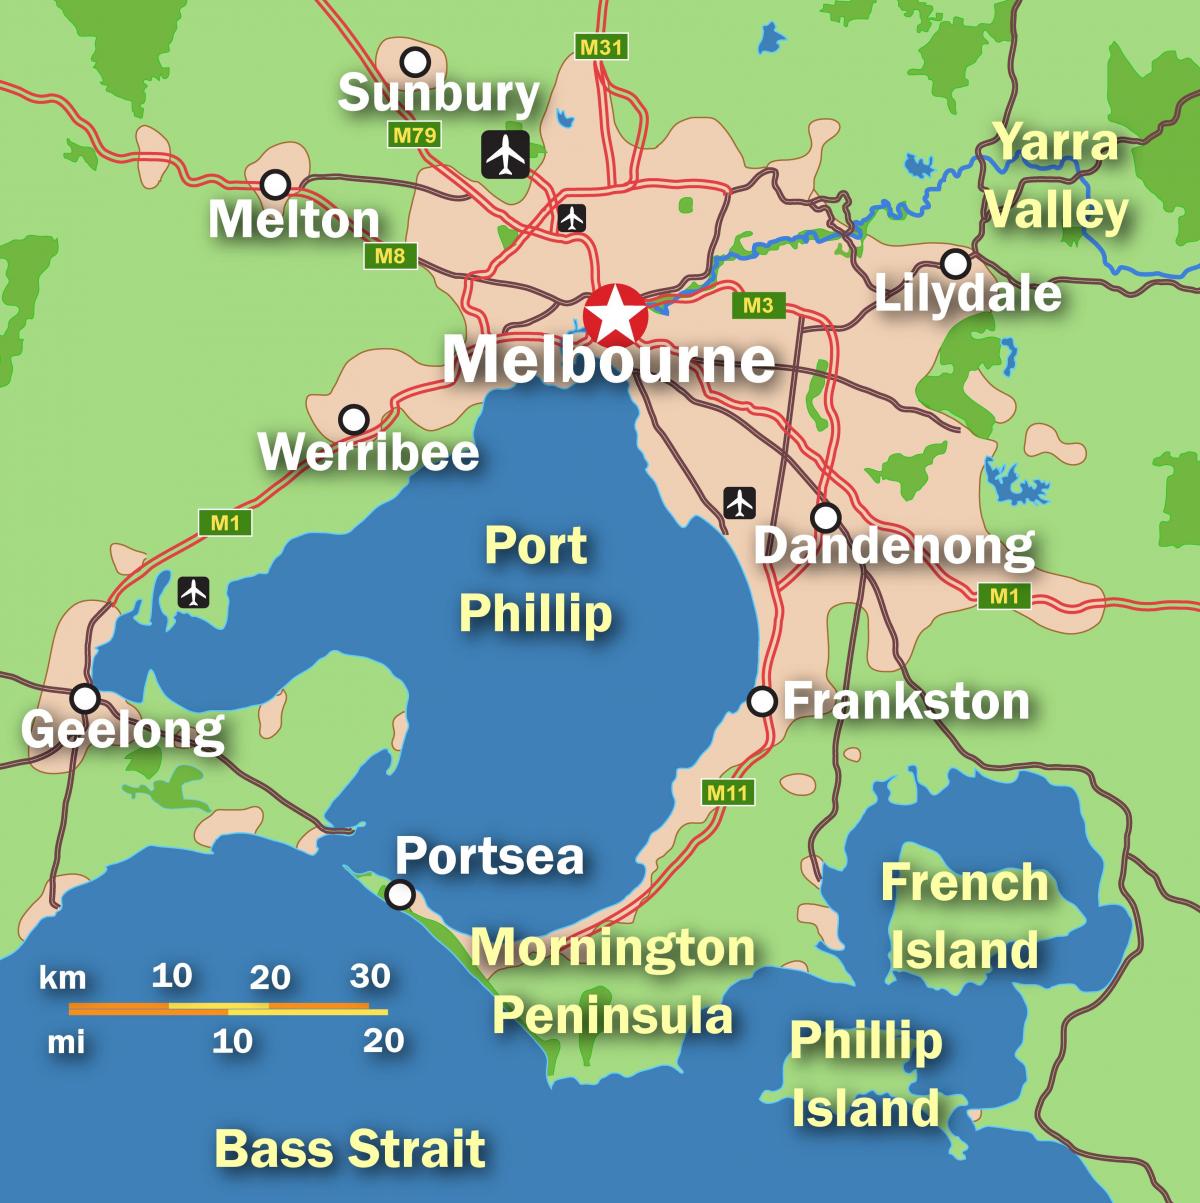 Mapa da cidade de Melbourne